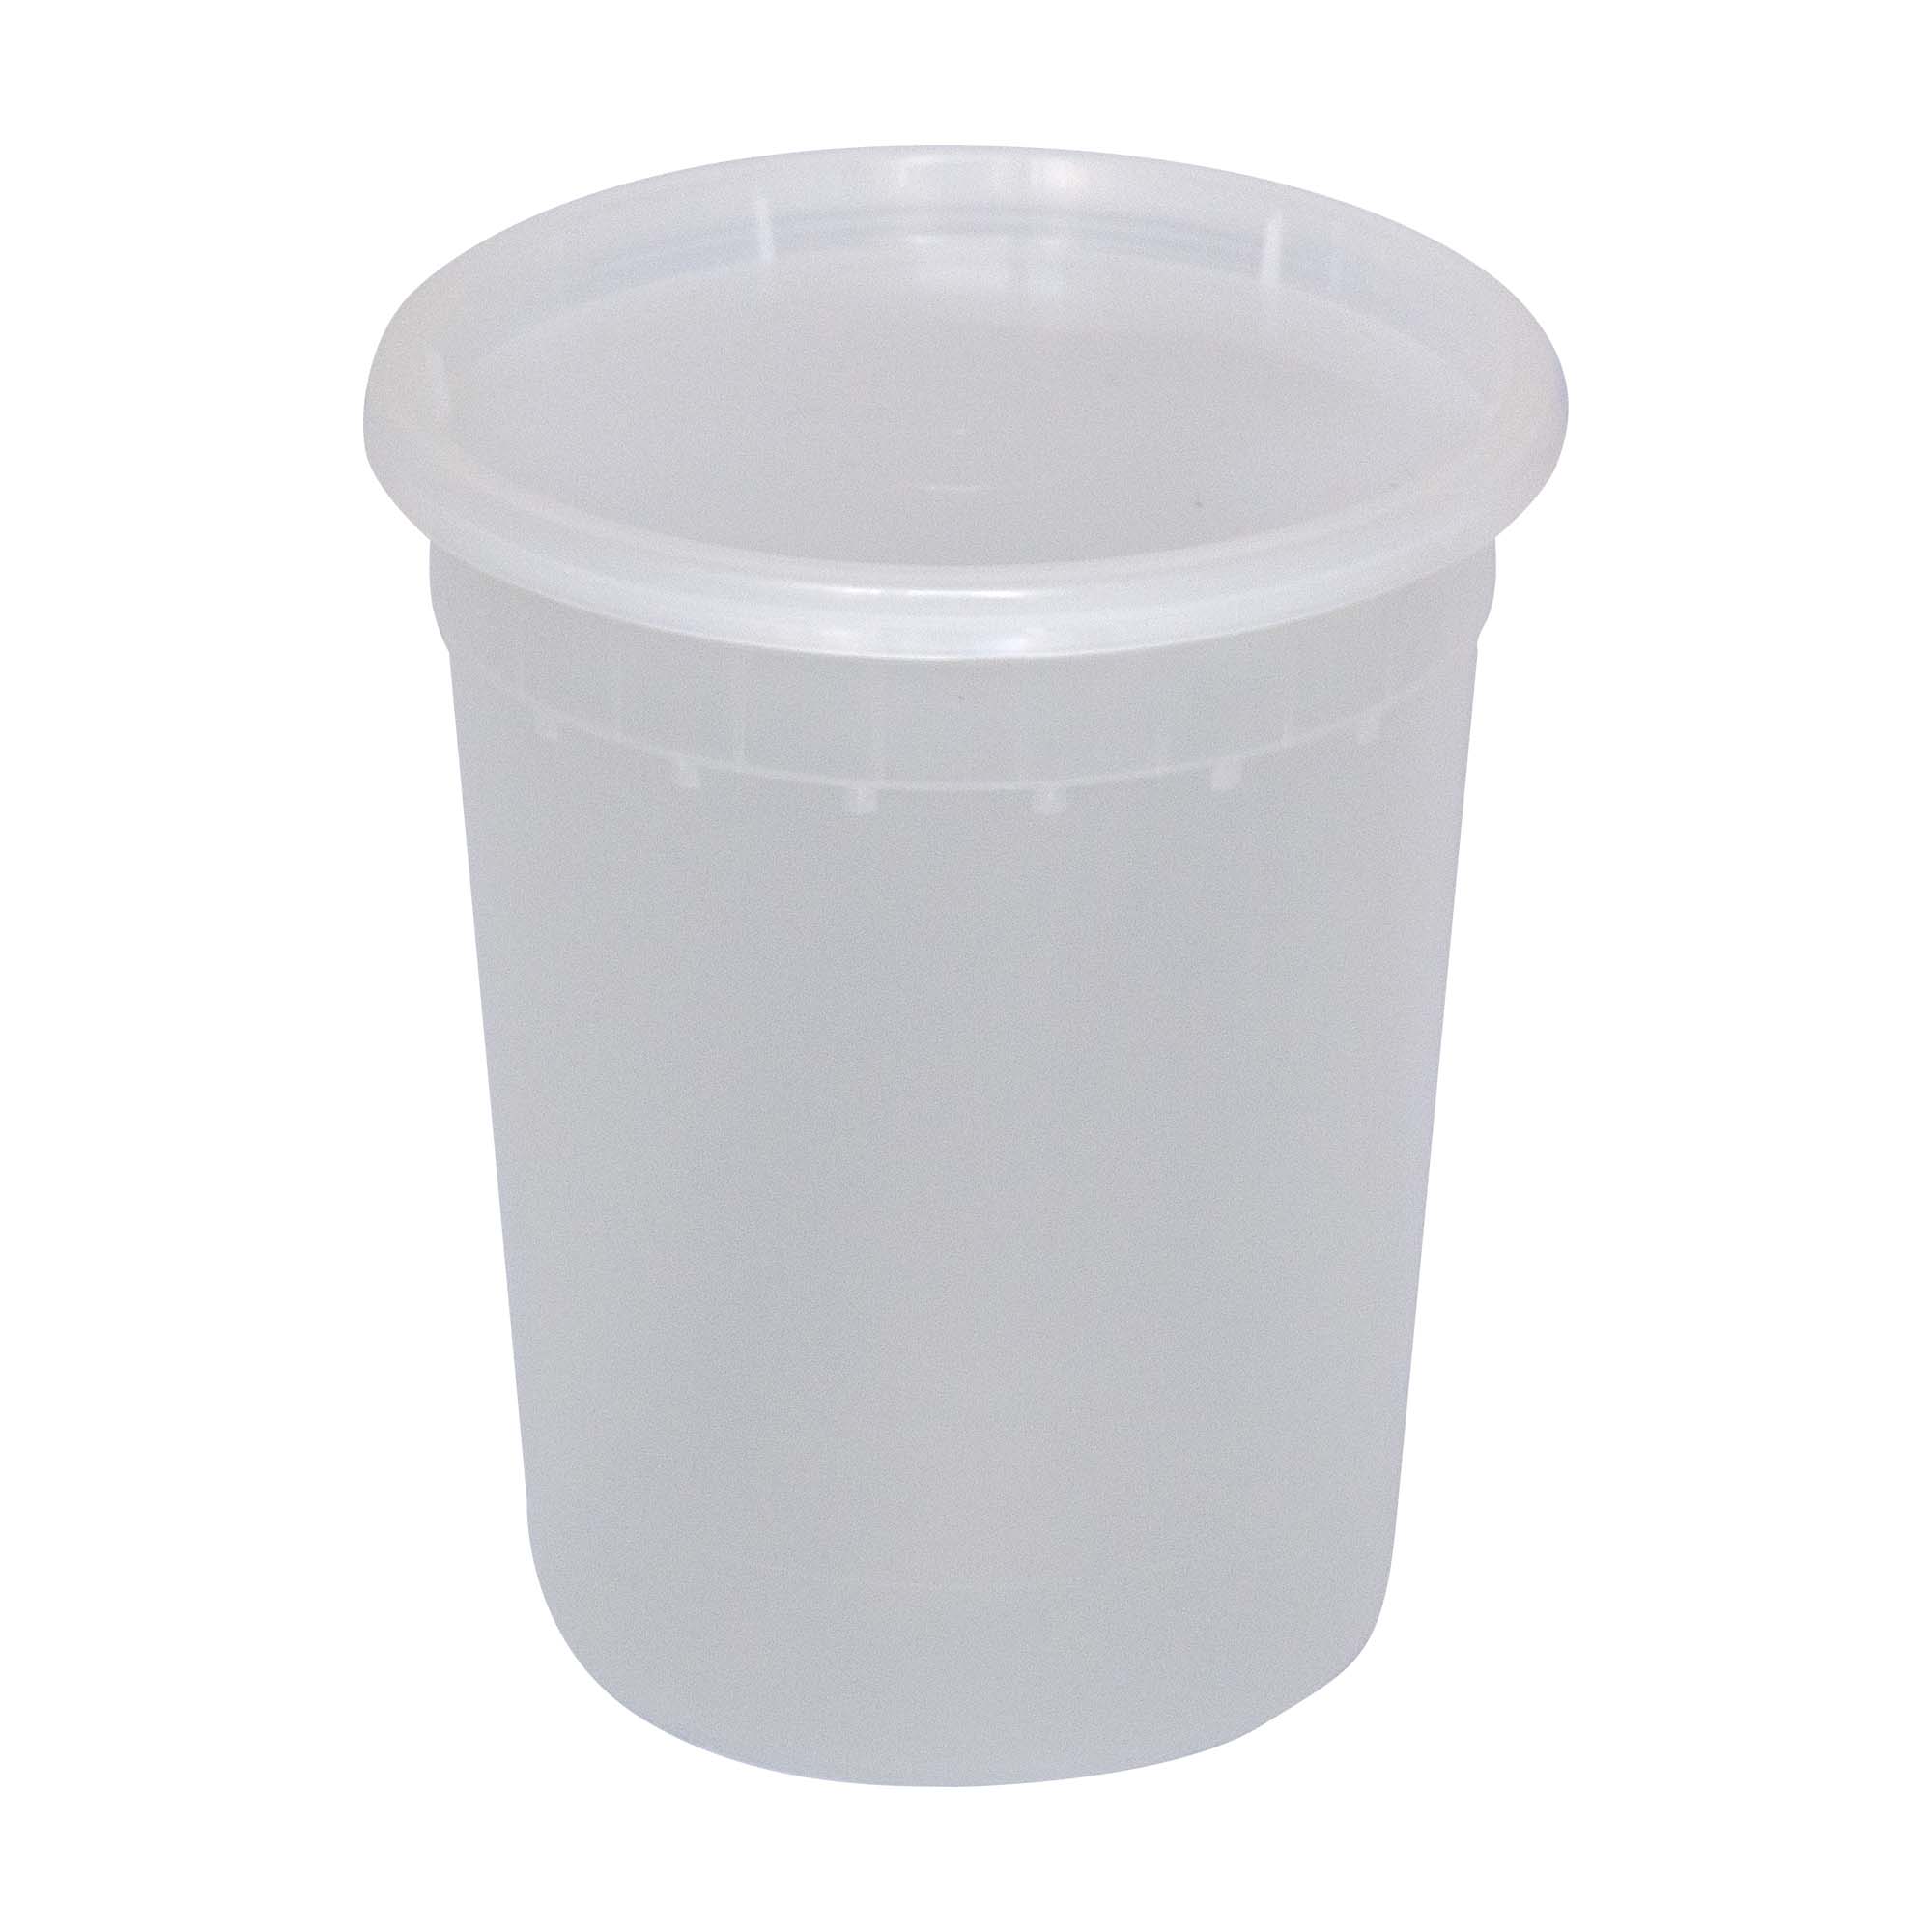 32 oz Premium Deli Containers with Lids. Plastic Quart Containers with Lids,  Soup Containers